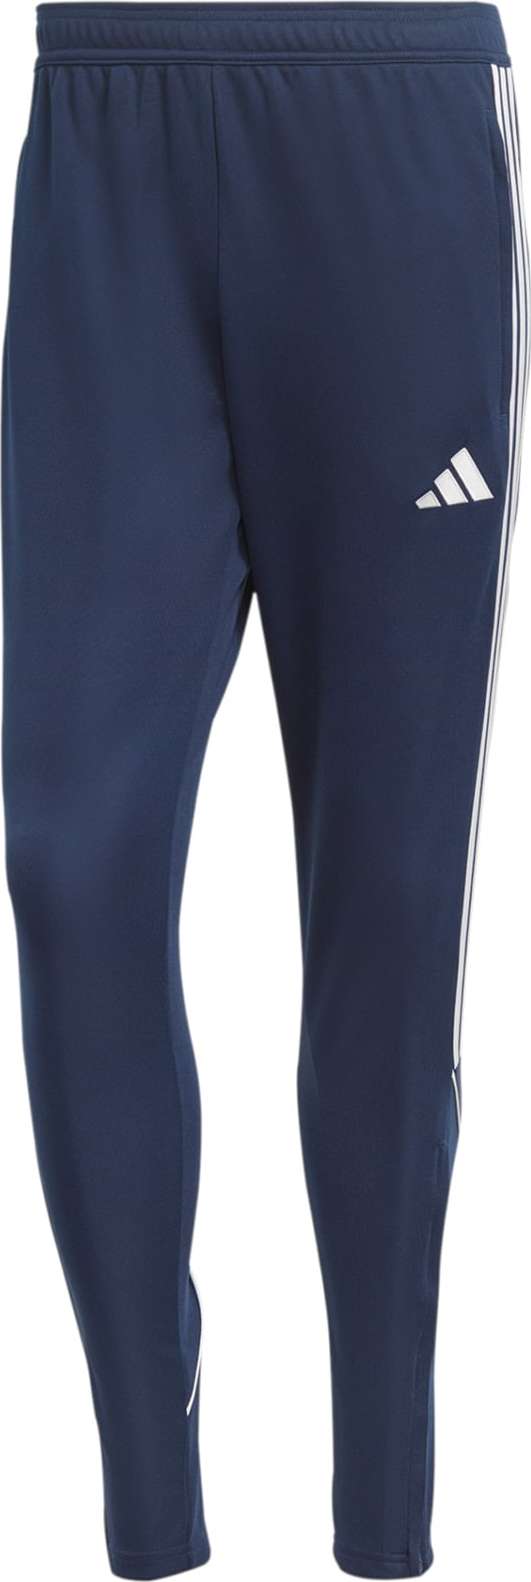 ADIDAS PERFORMANCE Sportovní kalhoty 'Tiro 23' námořnická modř / bílá